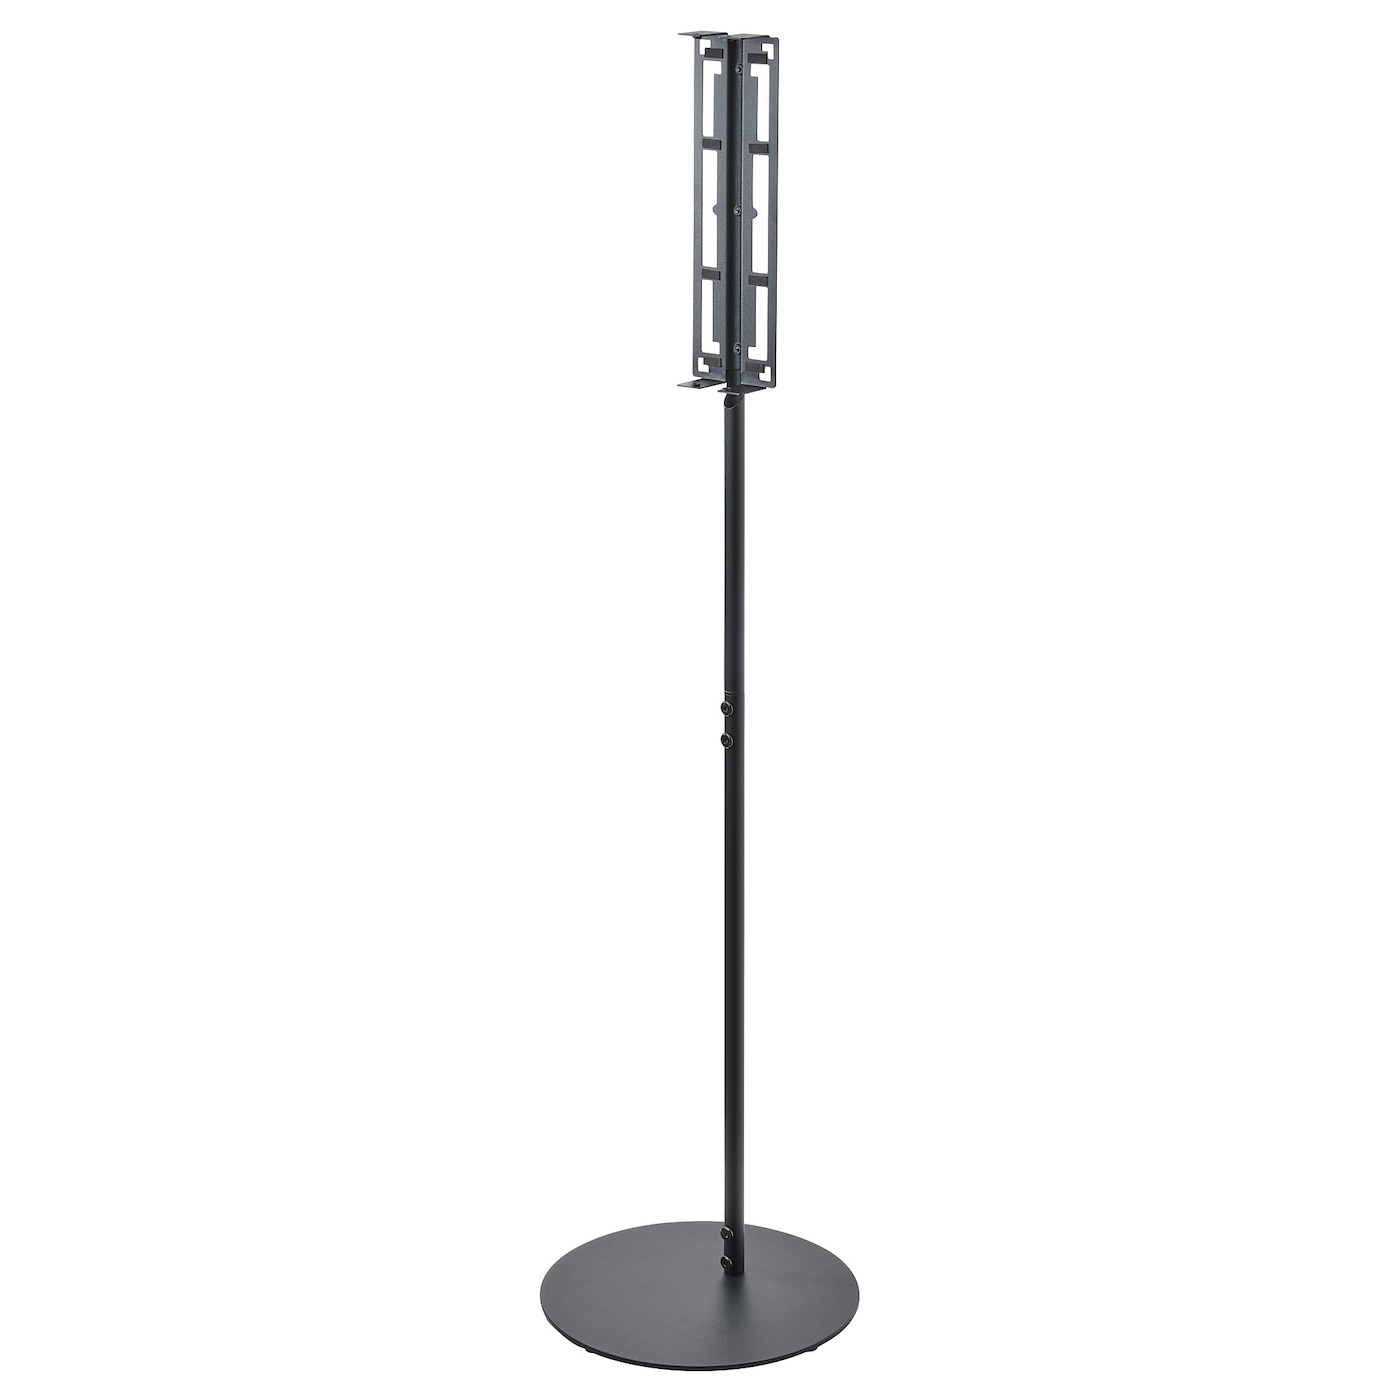 Напольная подставка для колонок  - SYMFONISK IKEA/ СУМФОНИСК ИКЕА,  117з30 см, черный